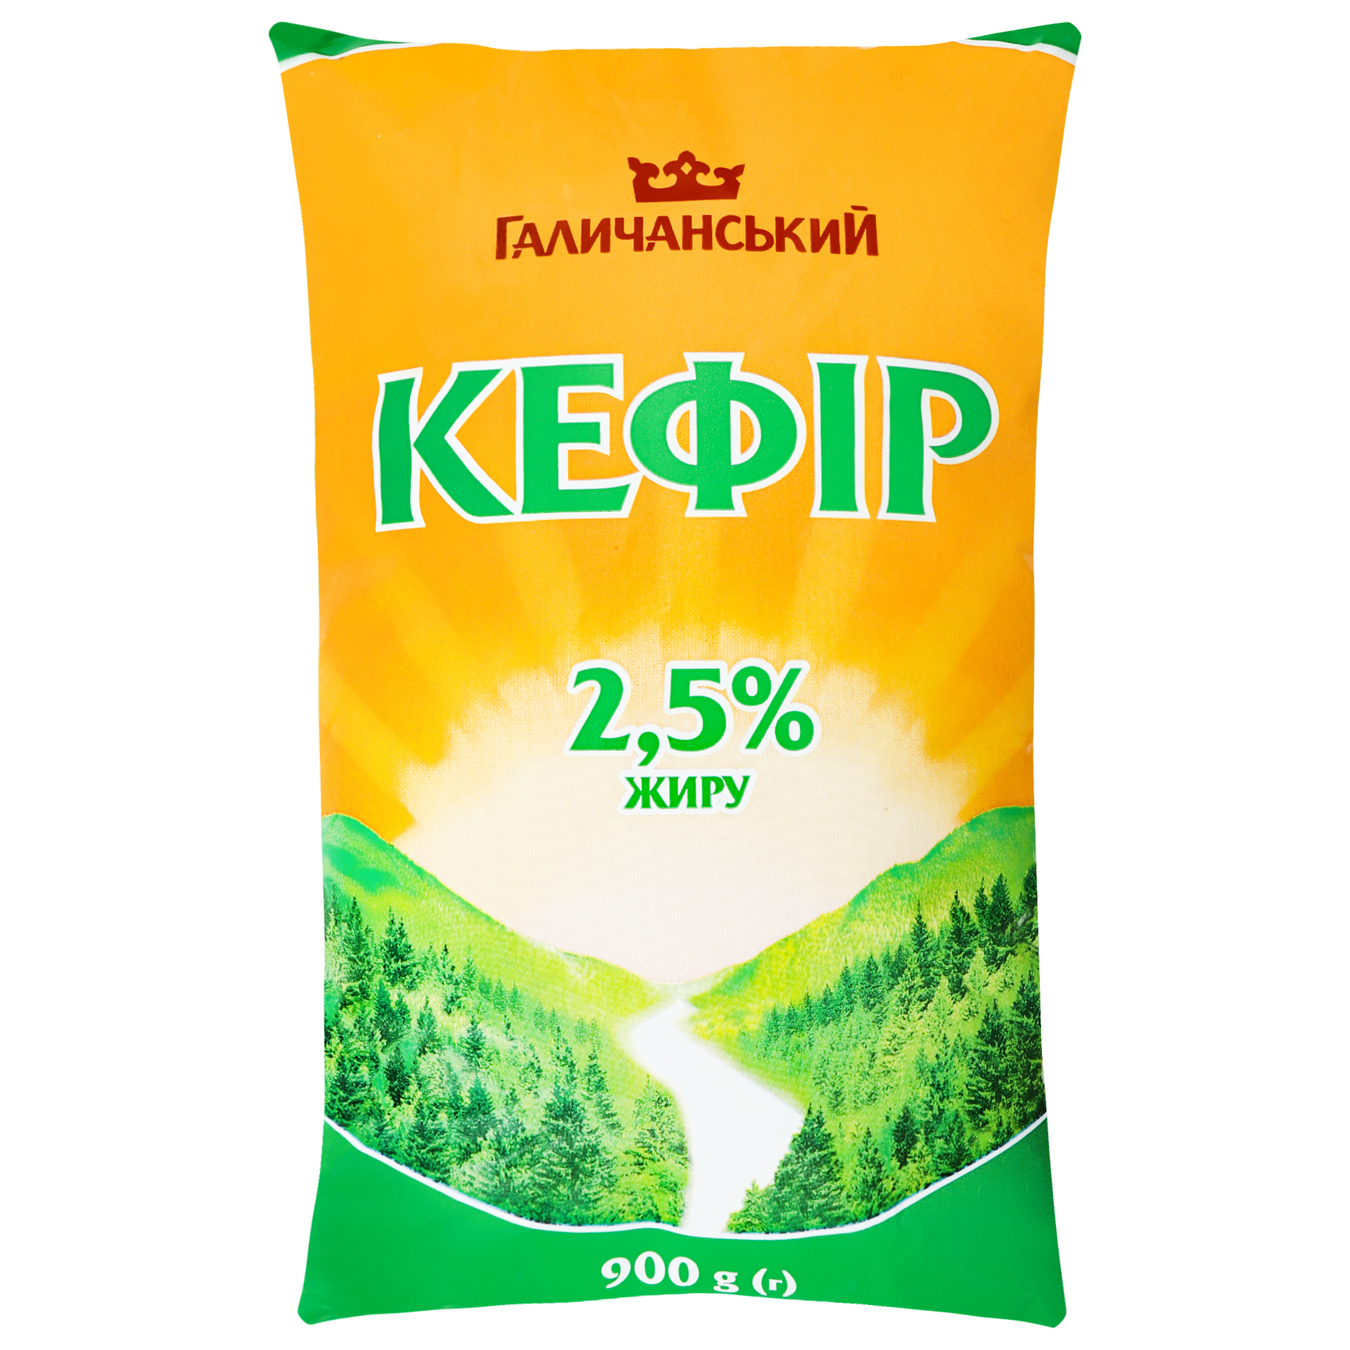 Halychansky Kefir 2.5% 900g